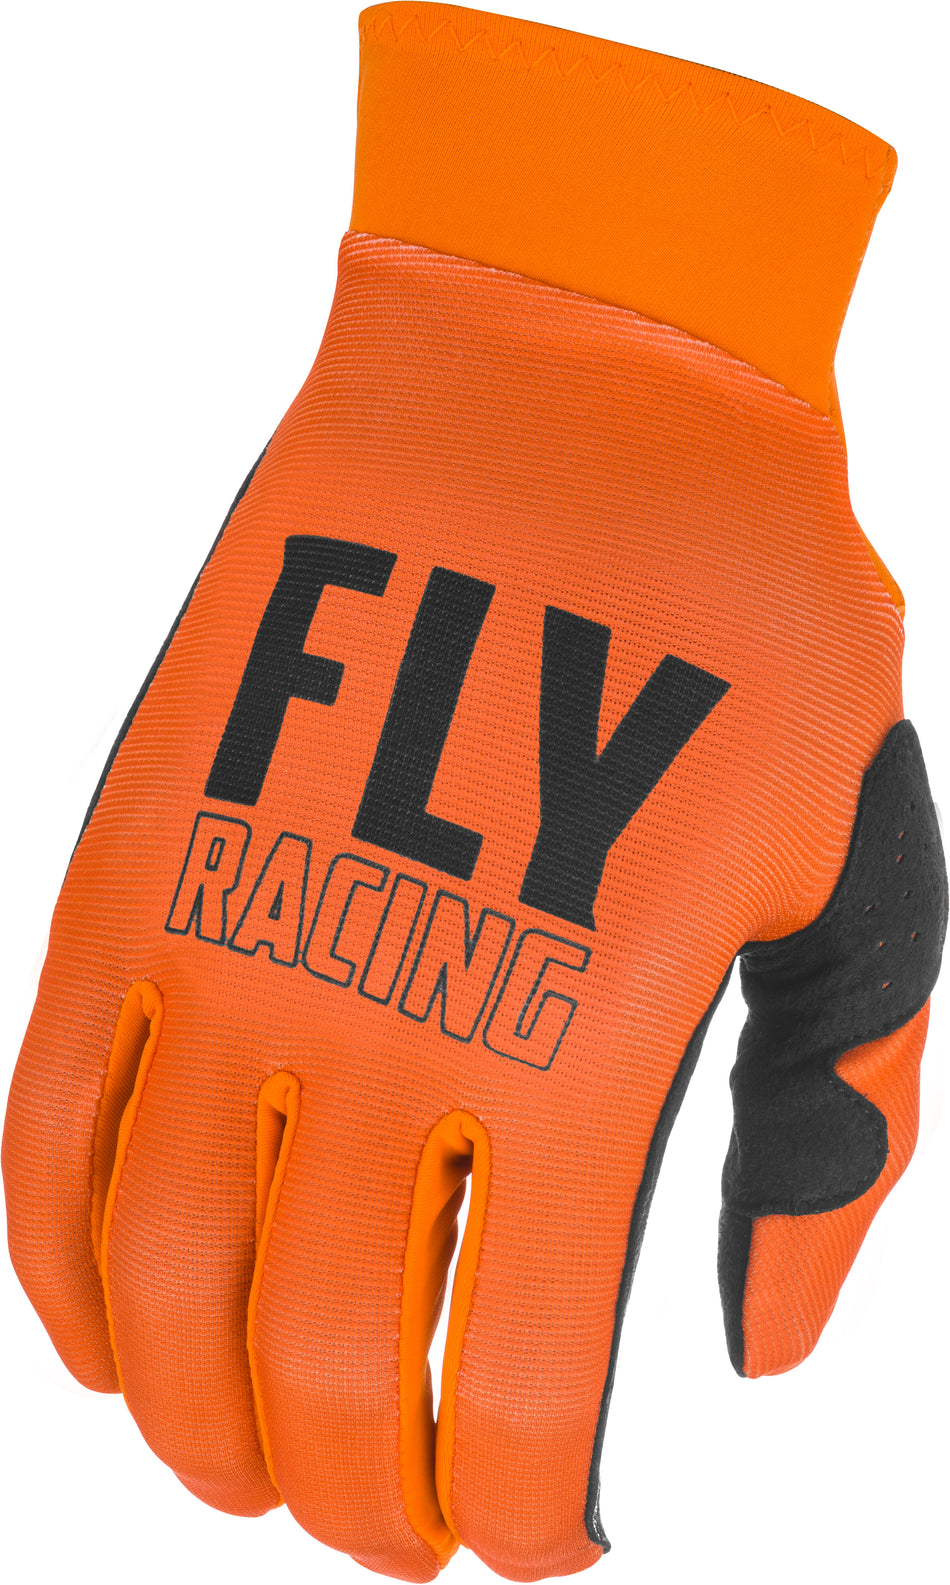 FLY RACING Pro Lite Gloves Orange/Black Md 374-858M